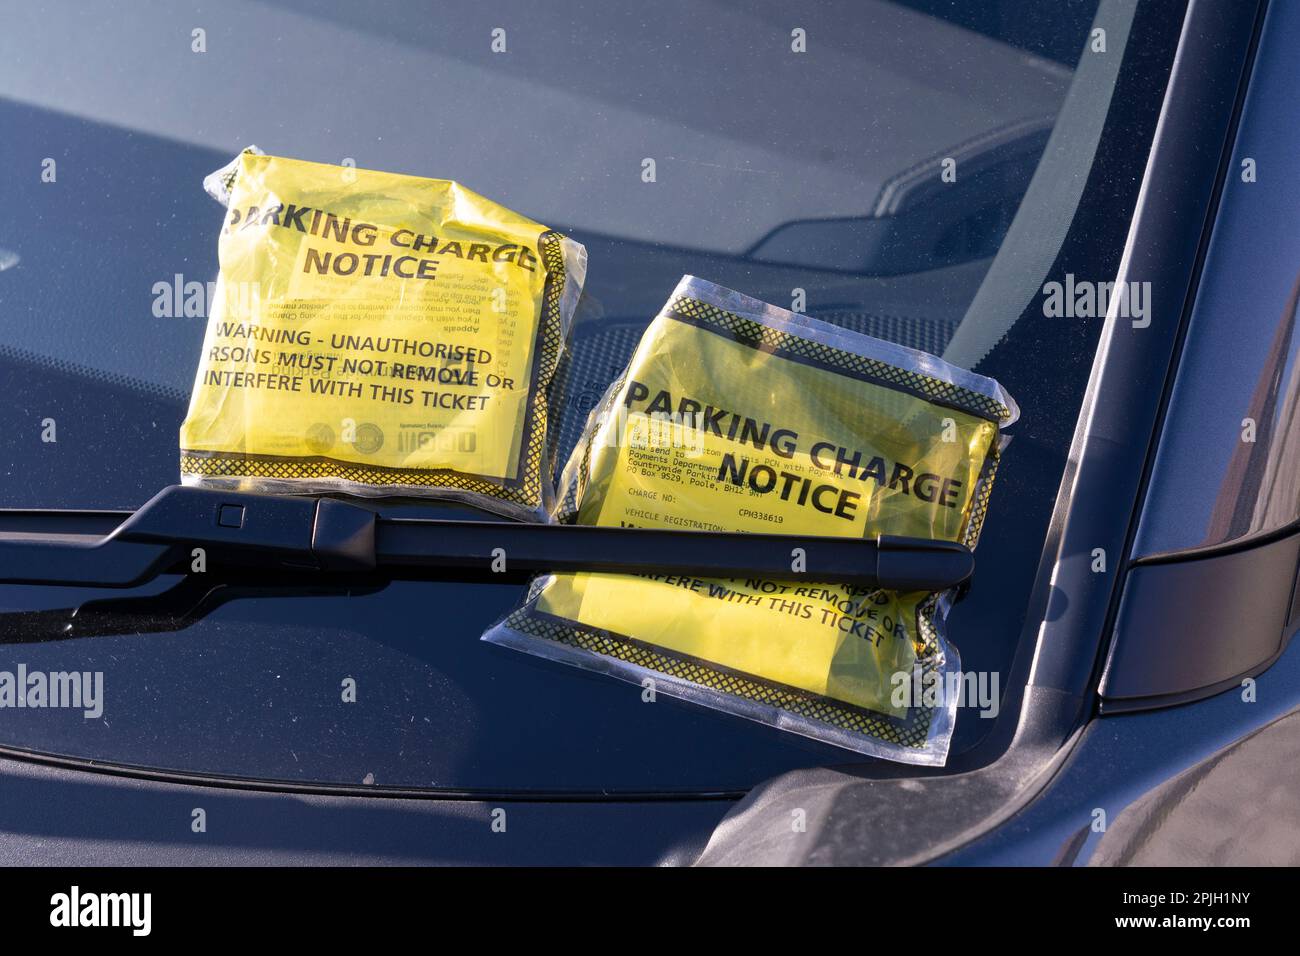 Avis à l'attention des conducteurs de parking frais (PCN) billets sur un pare-brise de voiture en Angleterre. Concept: Frais de parking inéquitables, parking agréable Banque D'Images